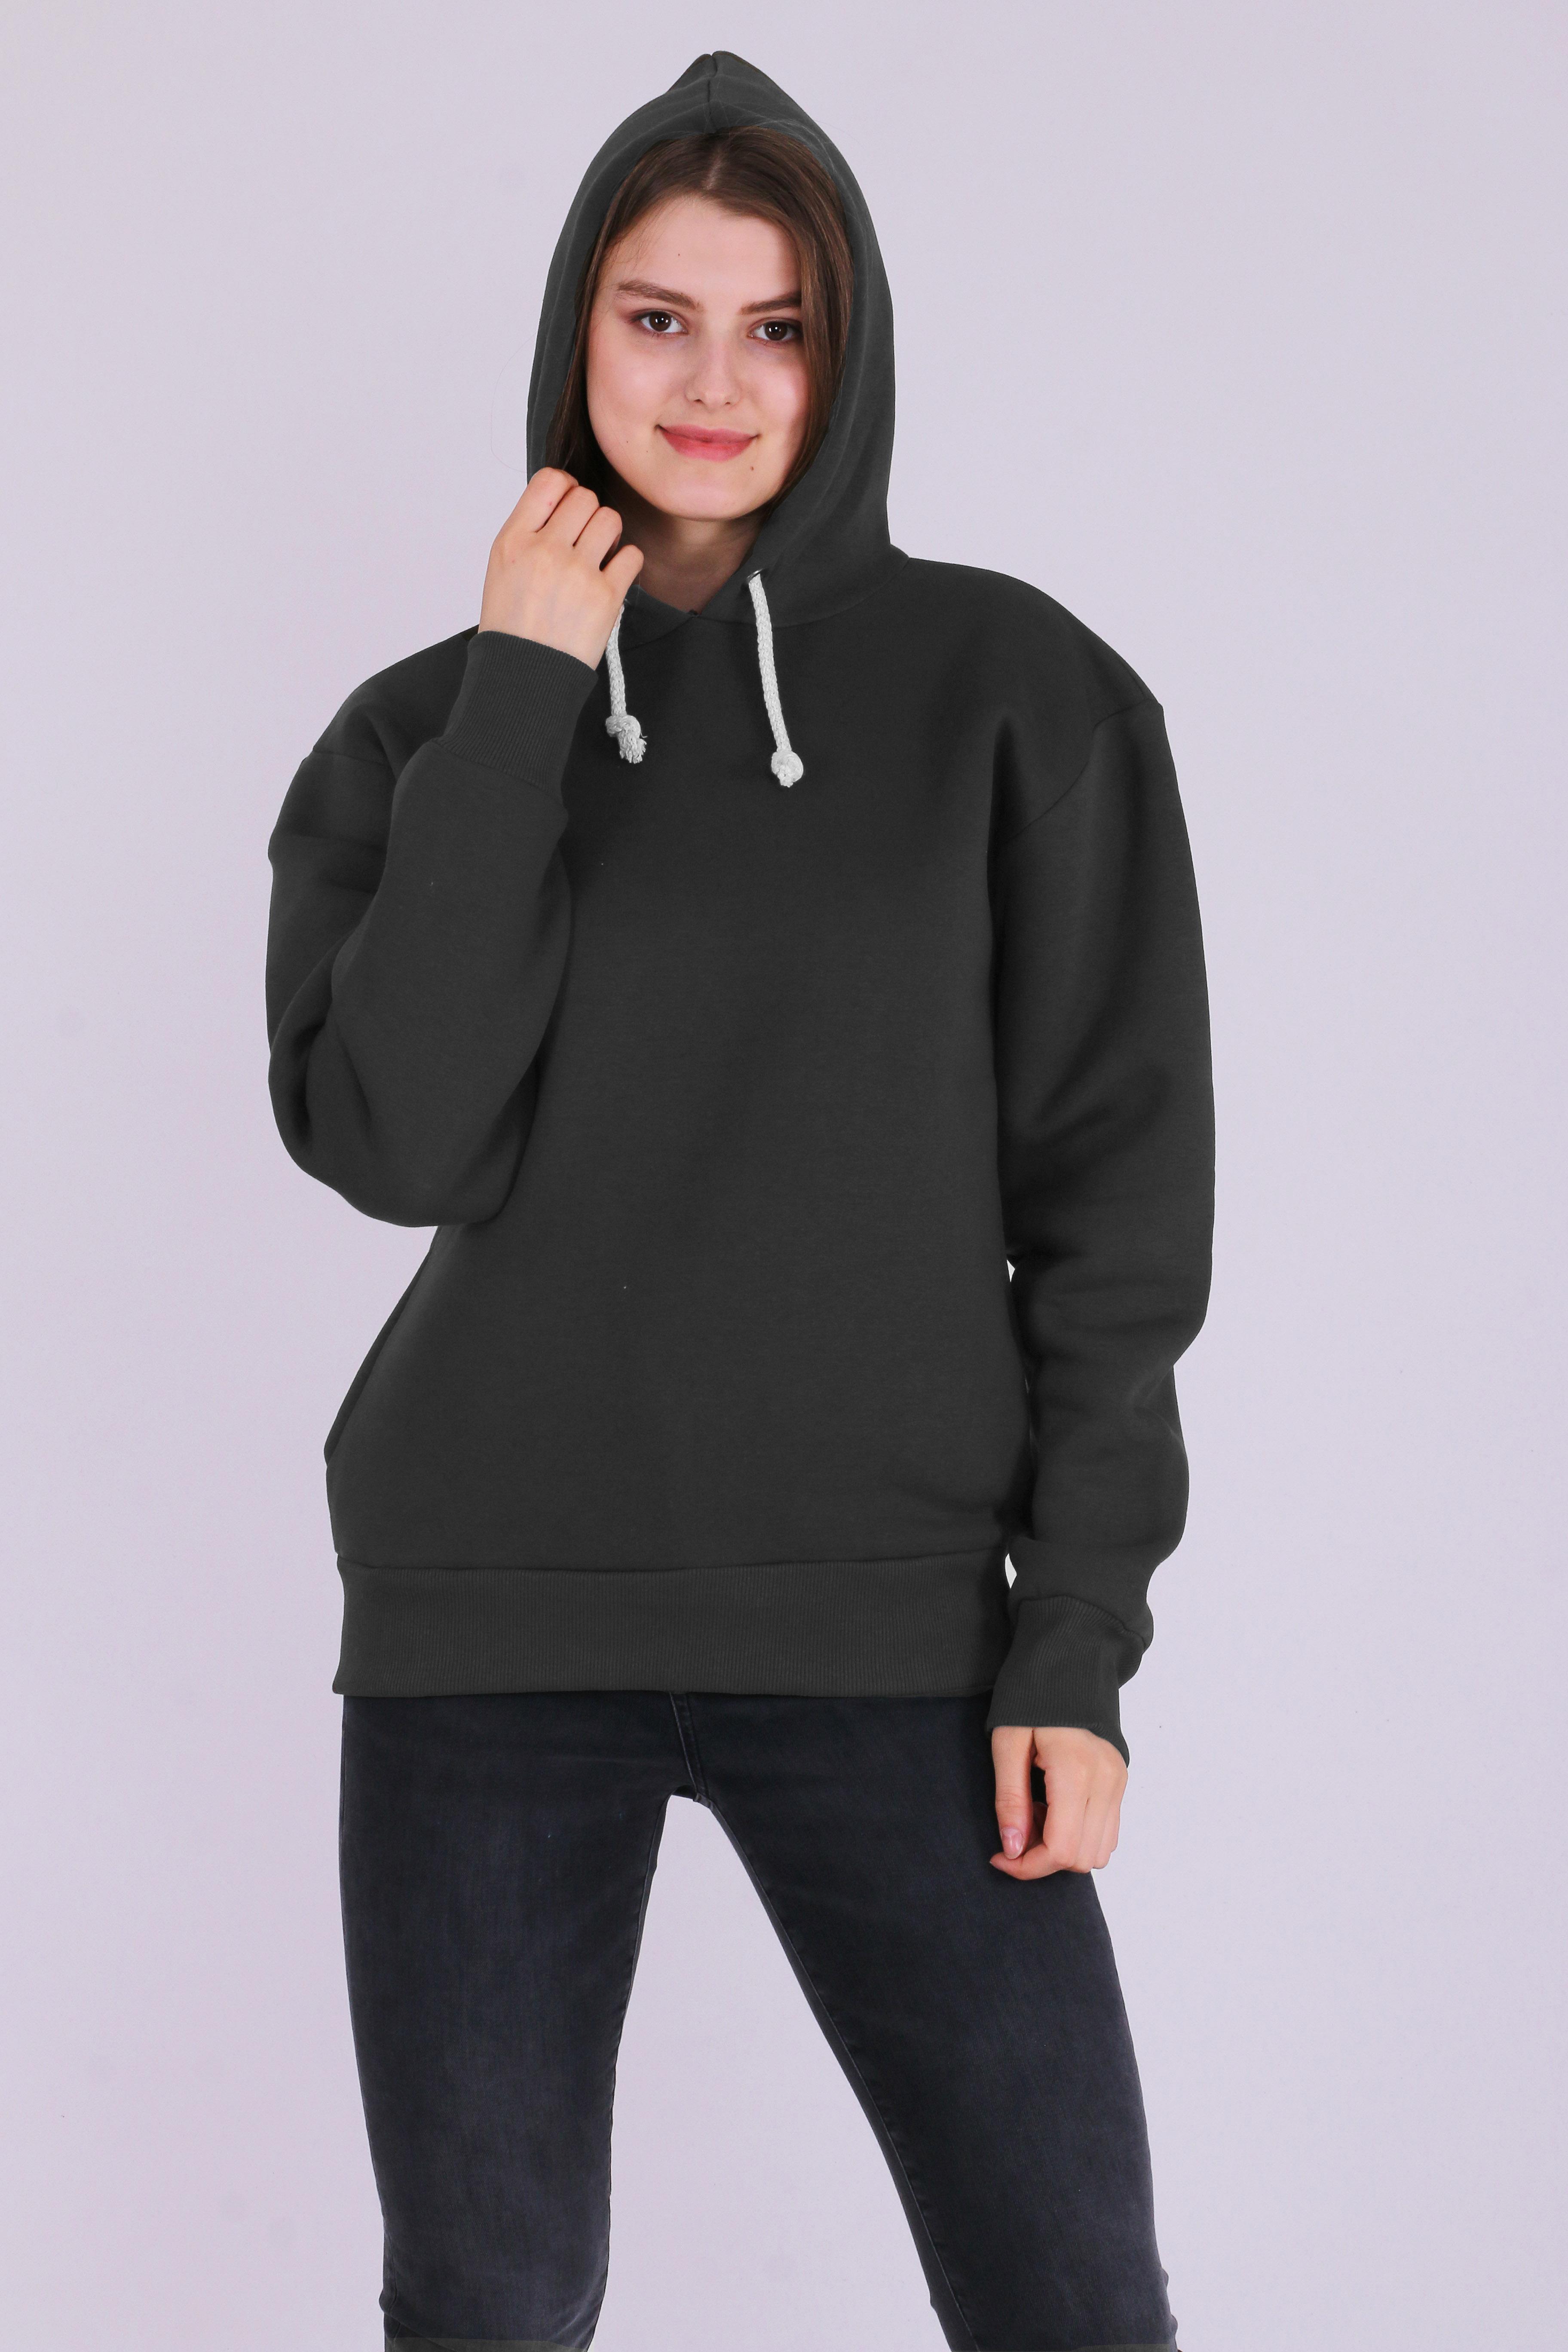 Füme Basic Oversize Kadın Kapüşonlu Hoodie 3 iplik Sweatshirt